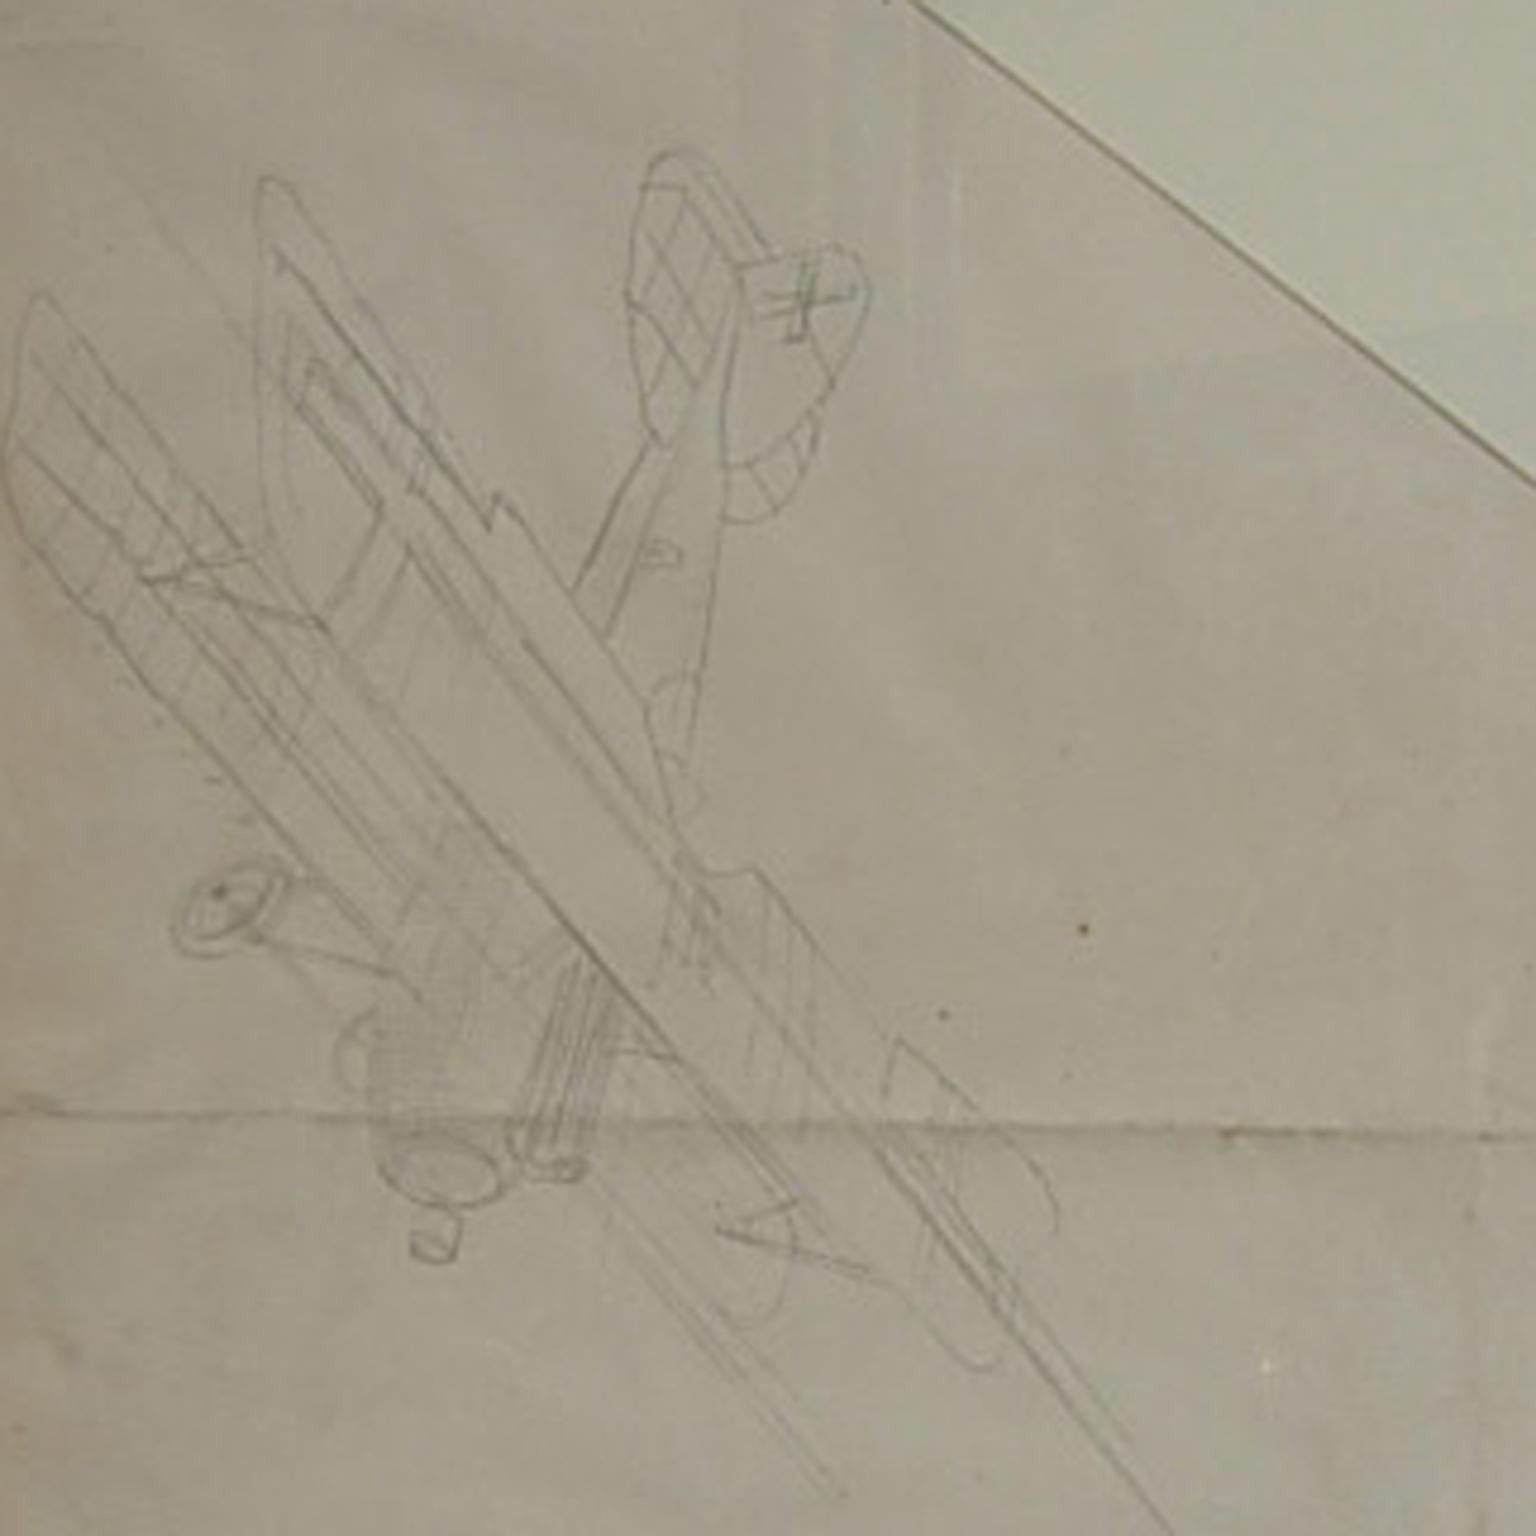 how to draw a ww1 biplane